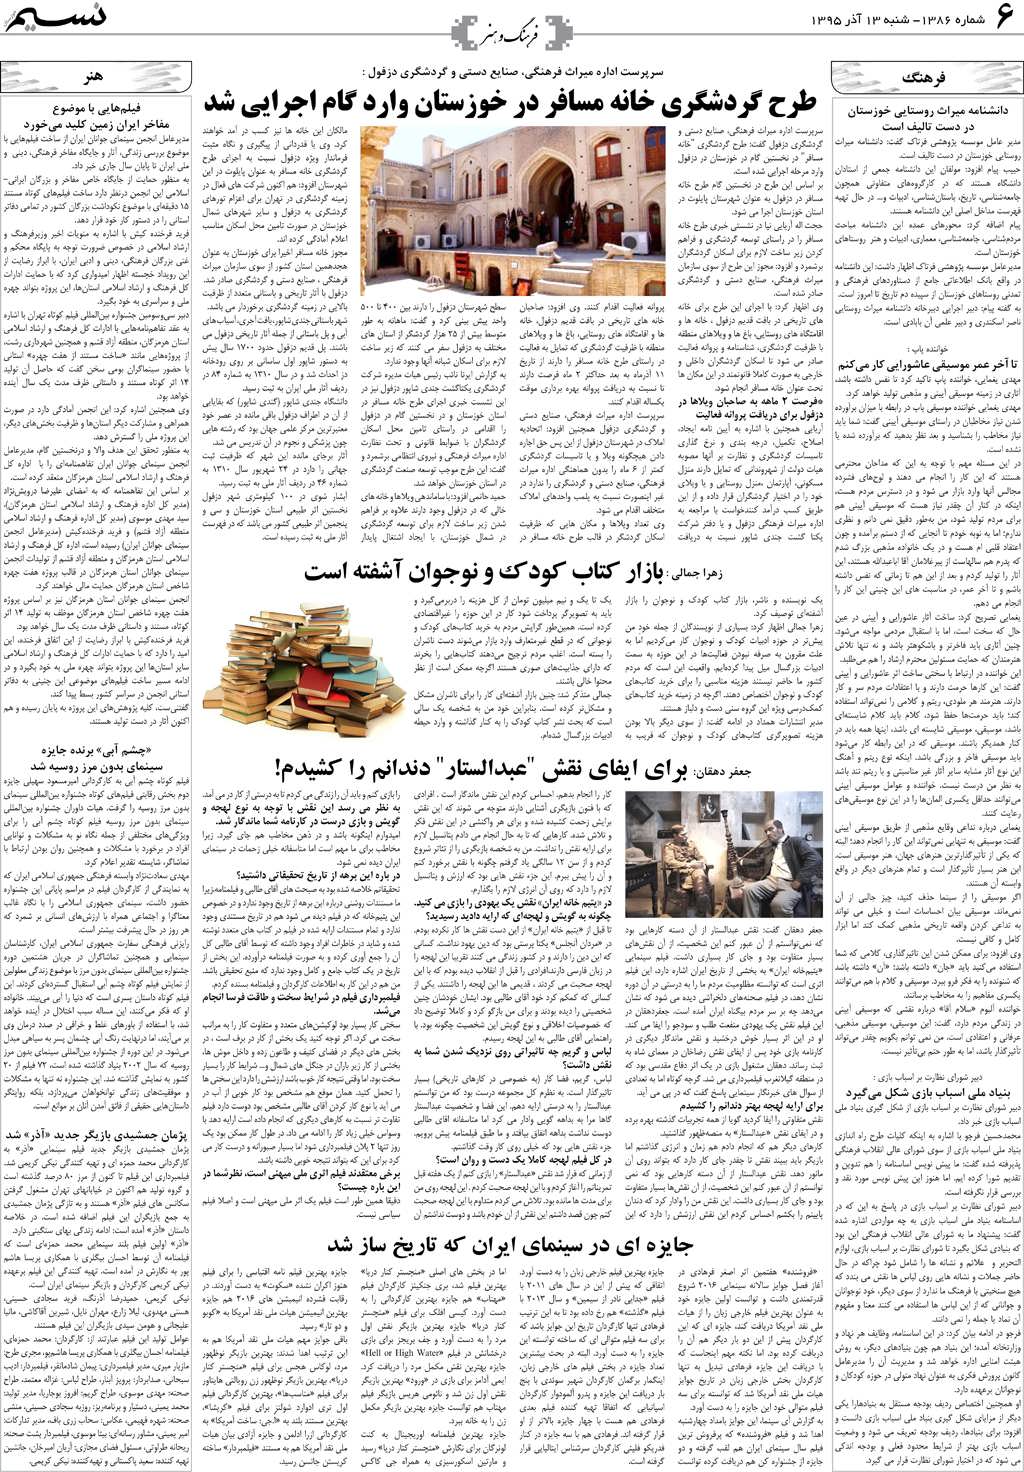 صفحه فرهنگ و هنر روزنامه نسیم شماره 1386